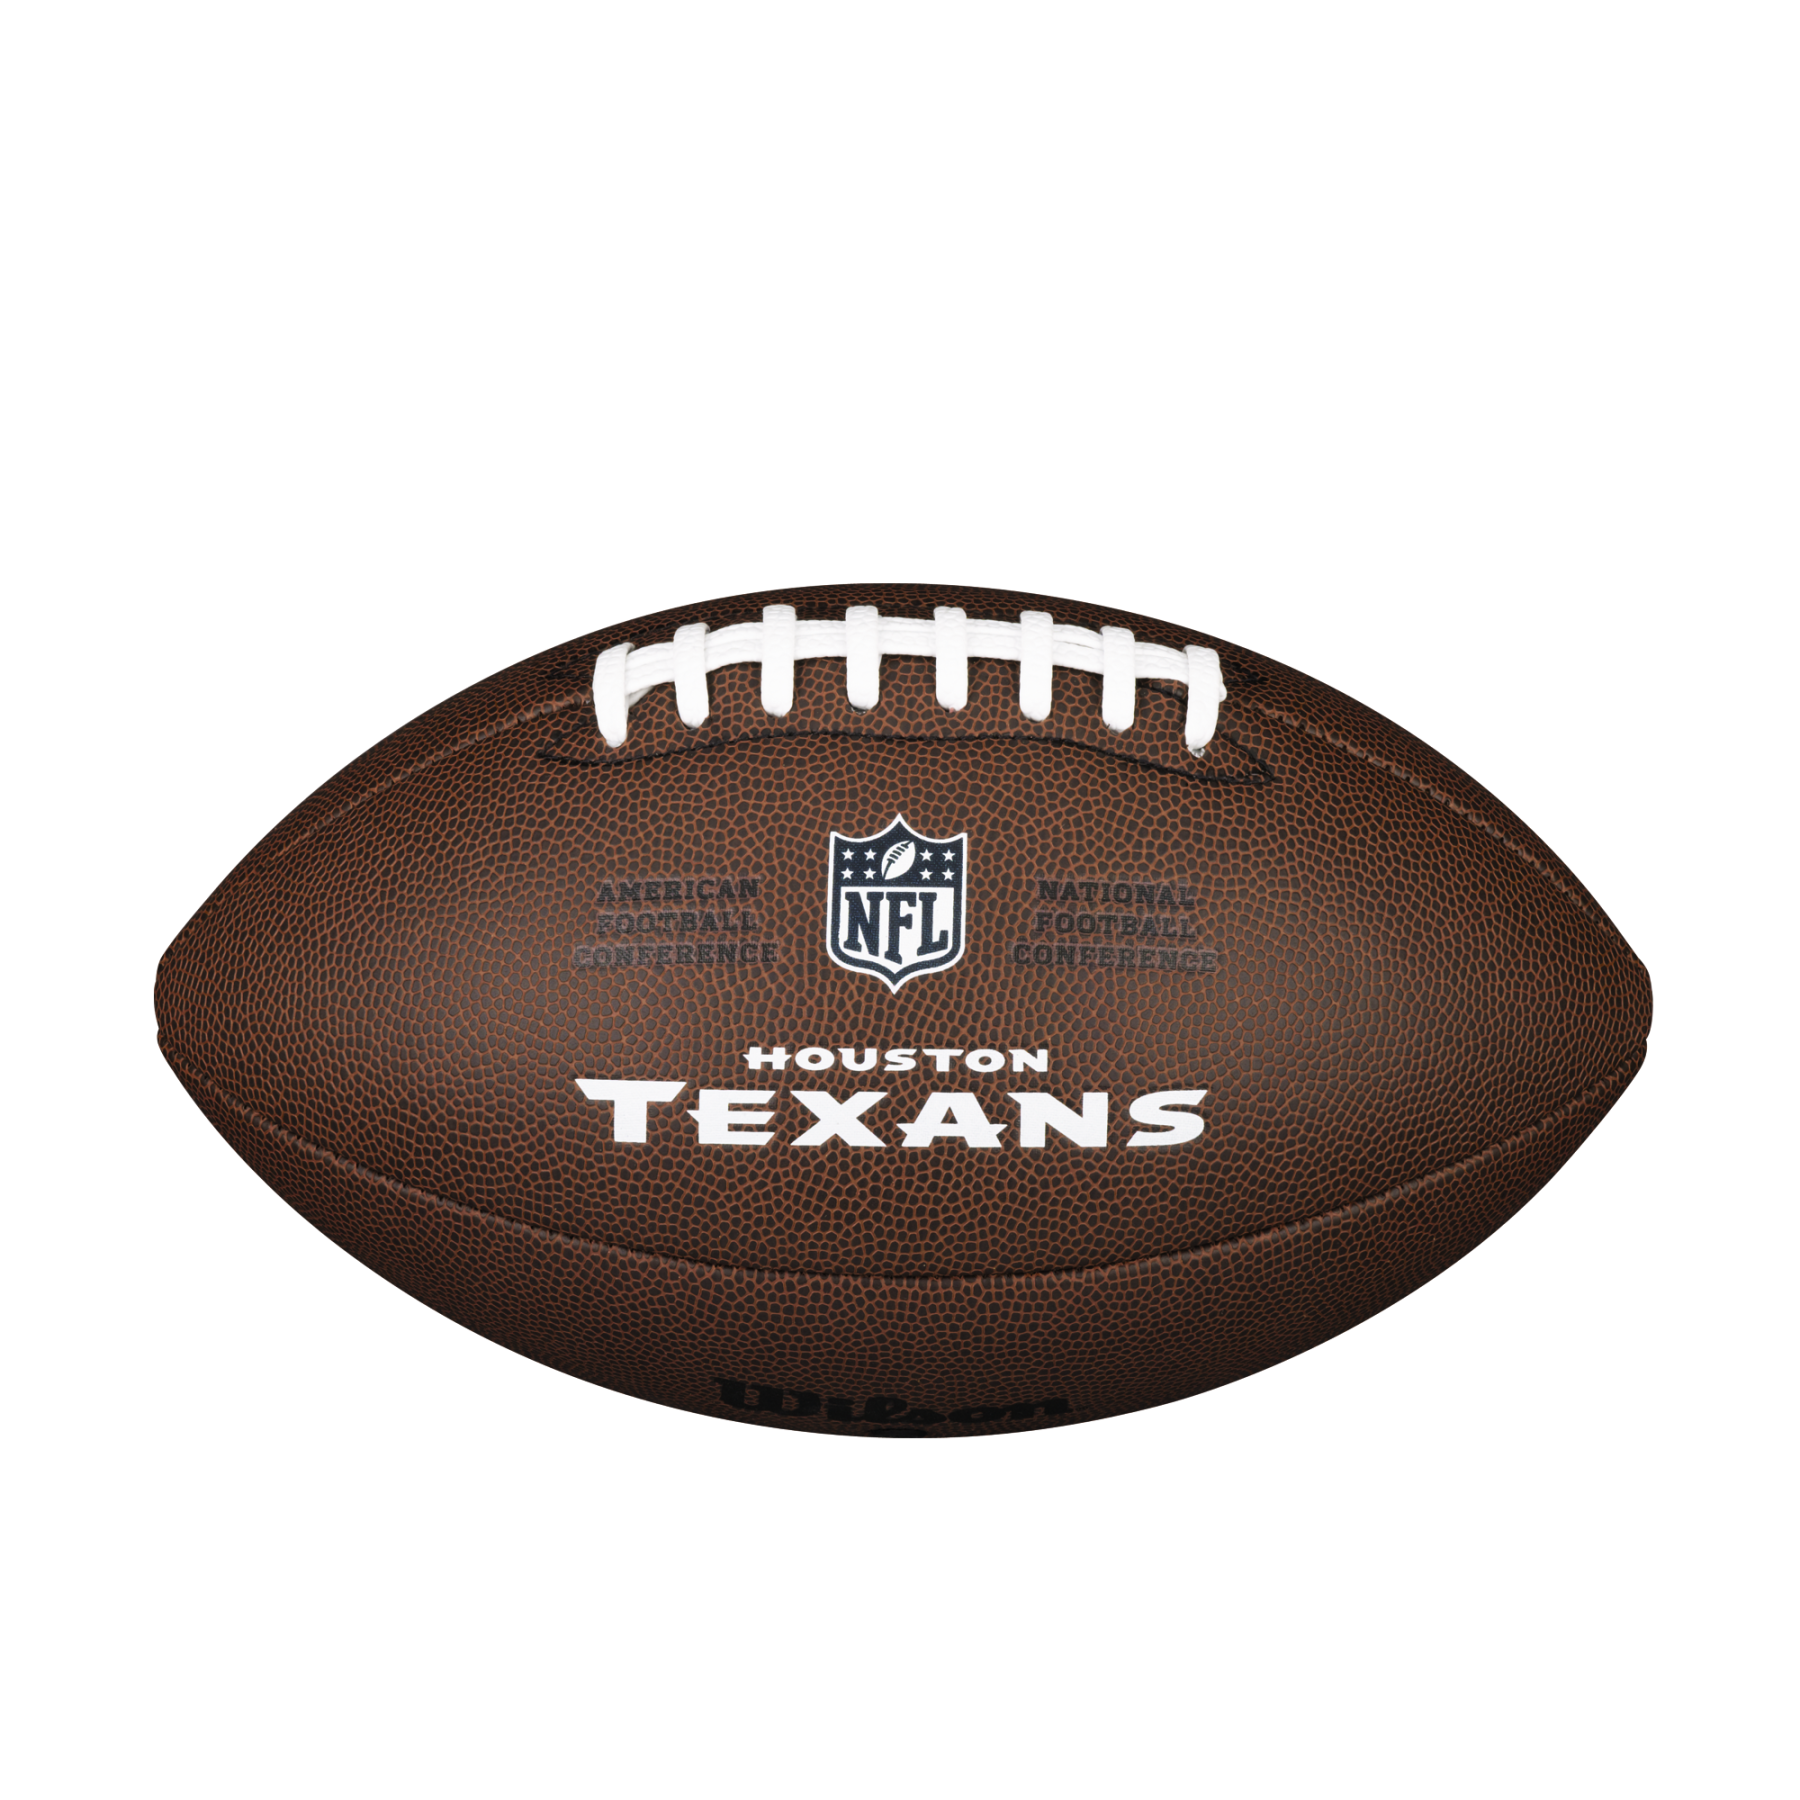 Bola Wilson Texans NFL com licença